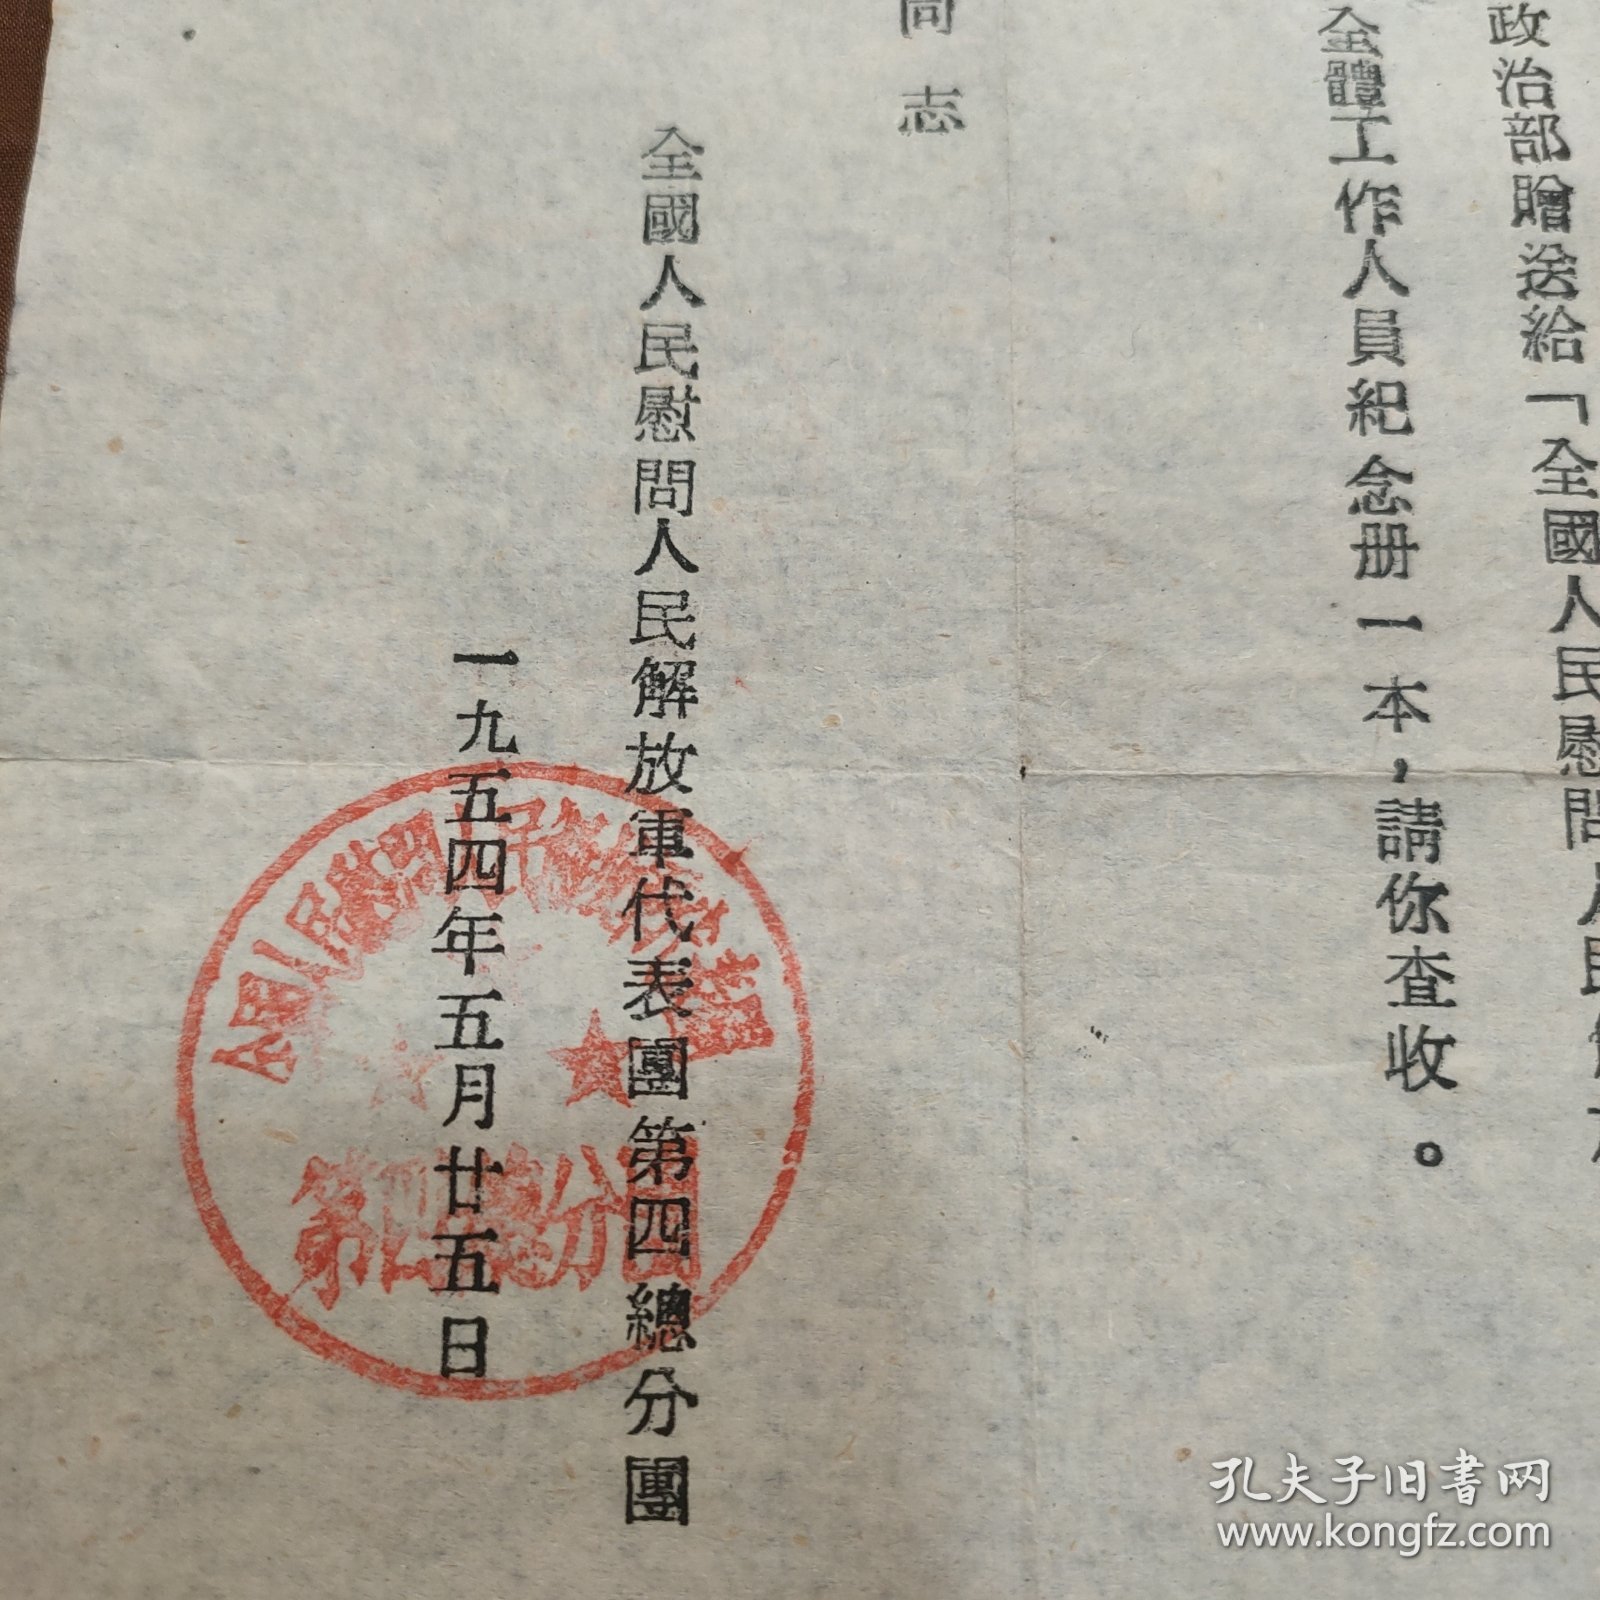 1954年赠送慰问团纪念册通知单